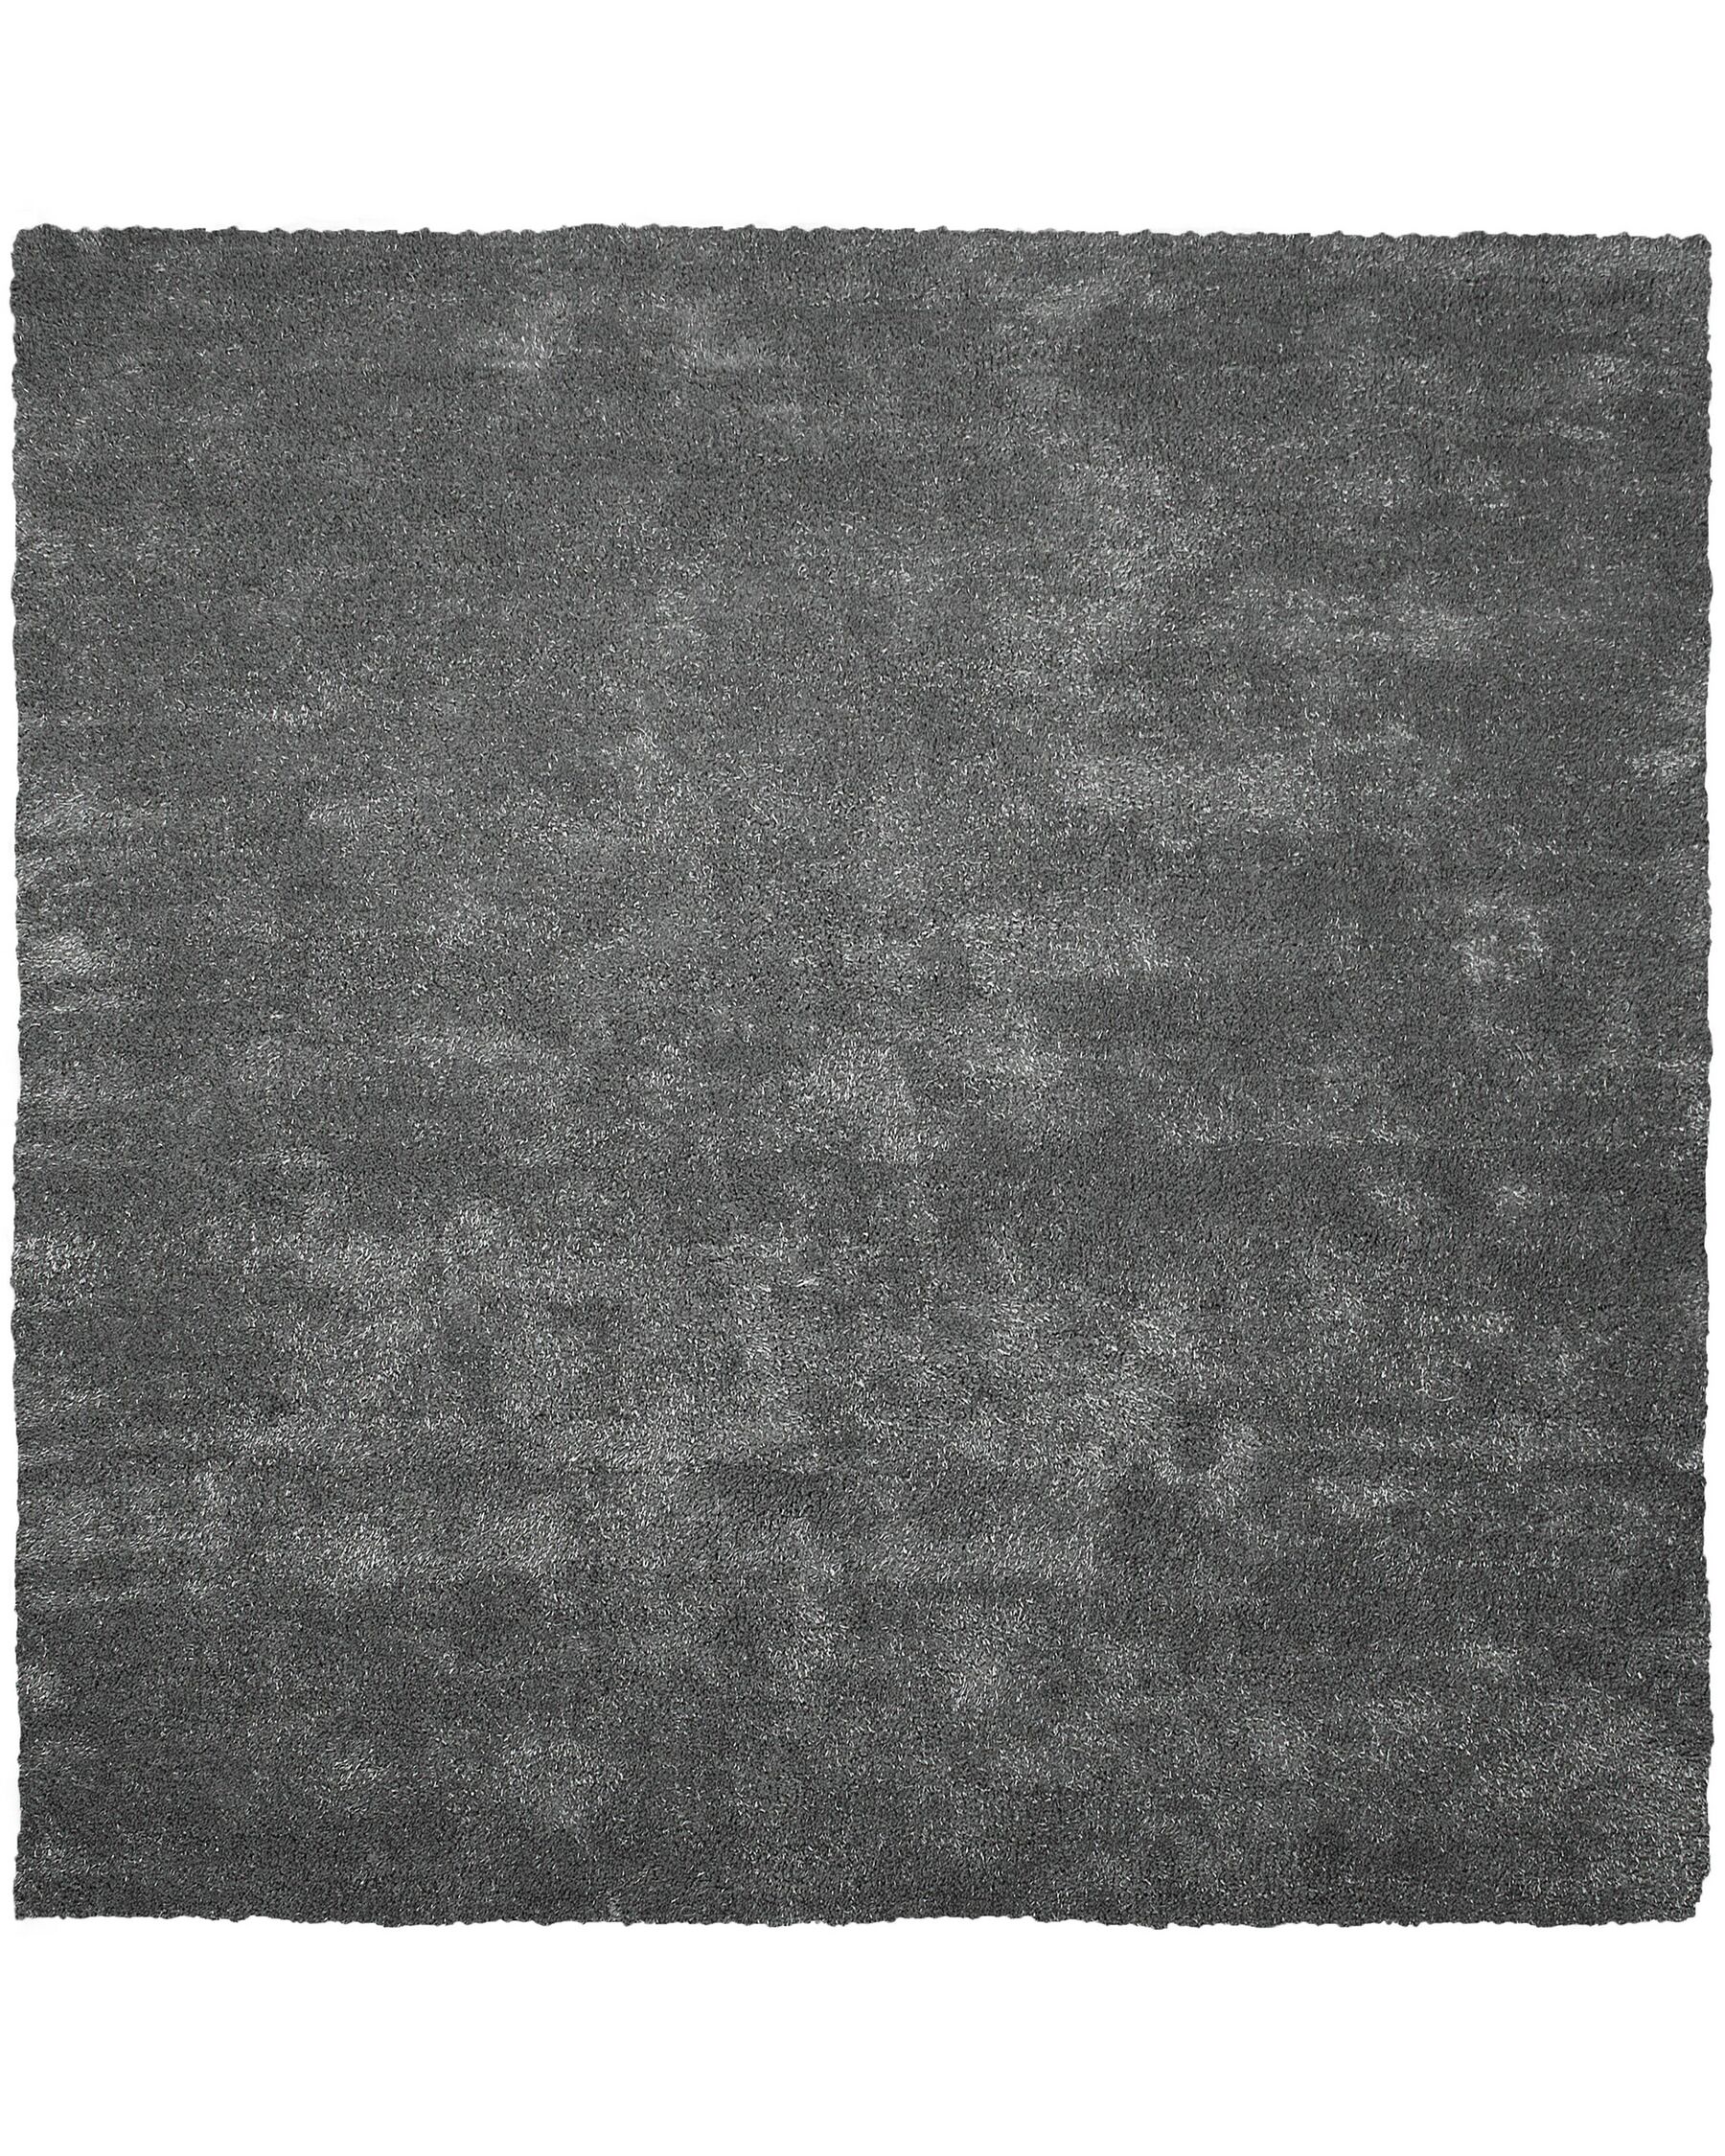 Koberec tmavě šedý DEMRE, 200x200 cm, karton 1/1_714805